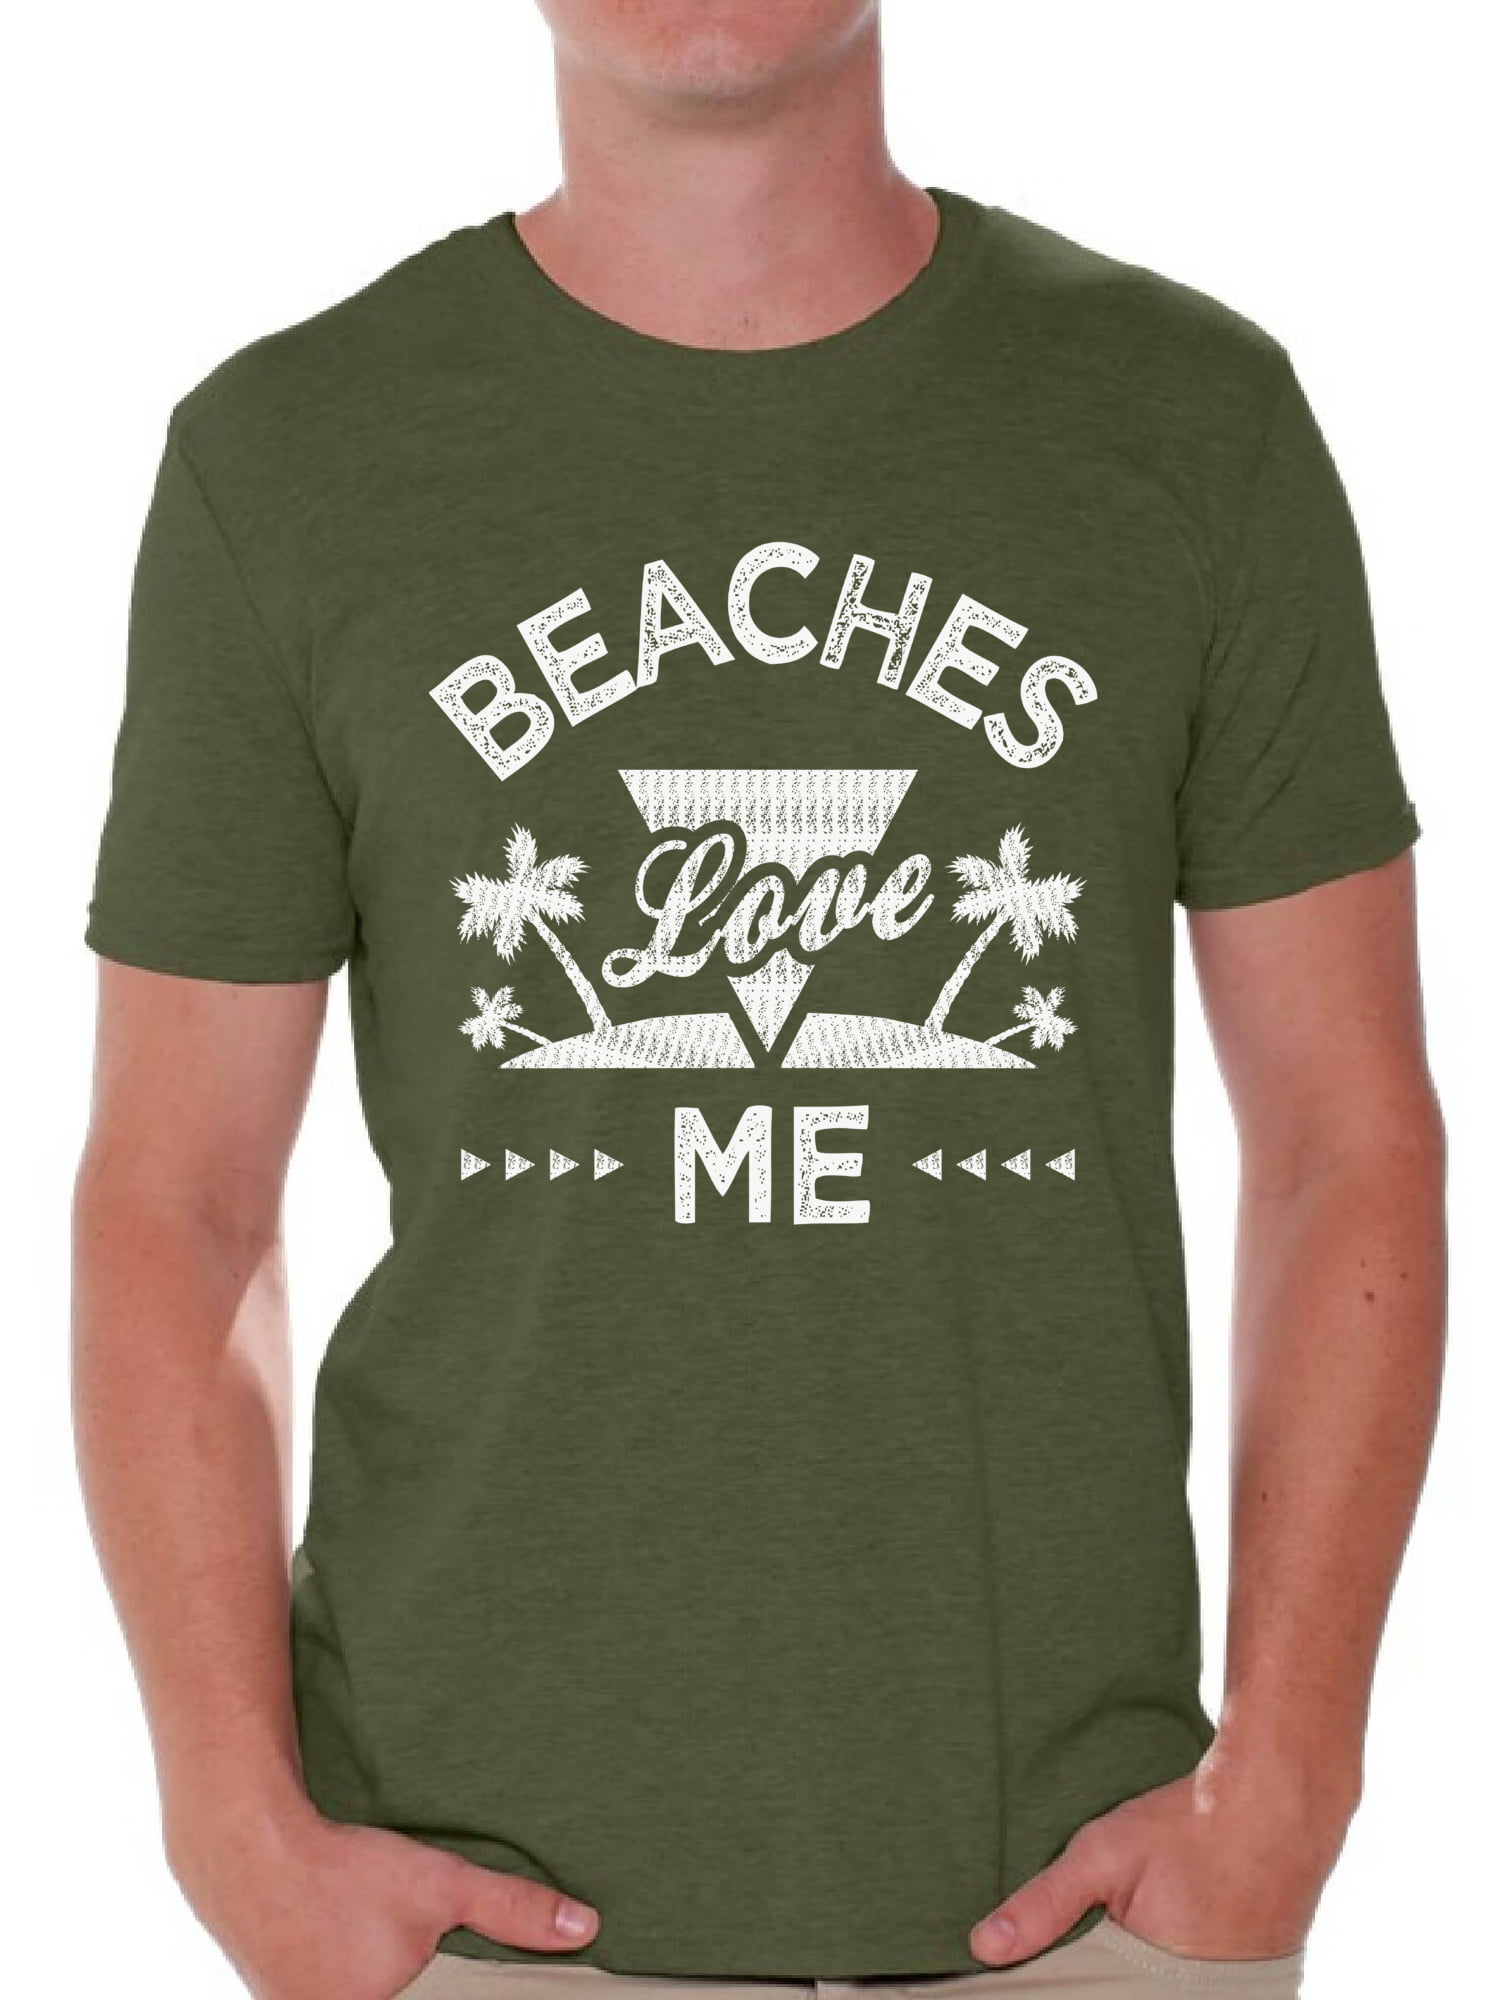 Beach Shirts For Women Vacay Mode Tropical UNISEX Summer Shirt SUMMER T Shirts For MenWomen Beach Shirt Vacation Shirt